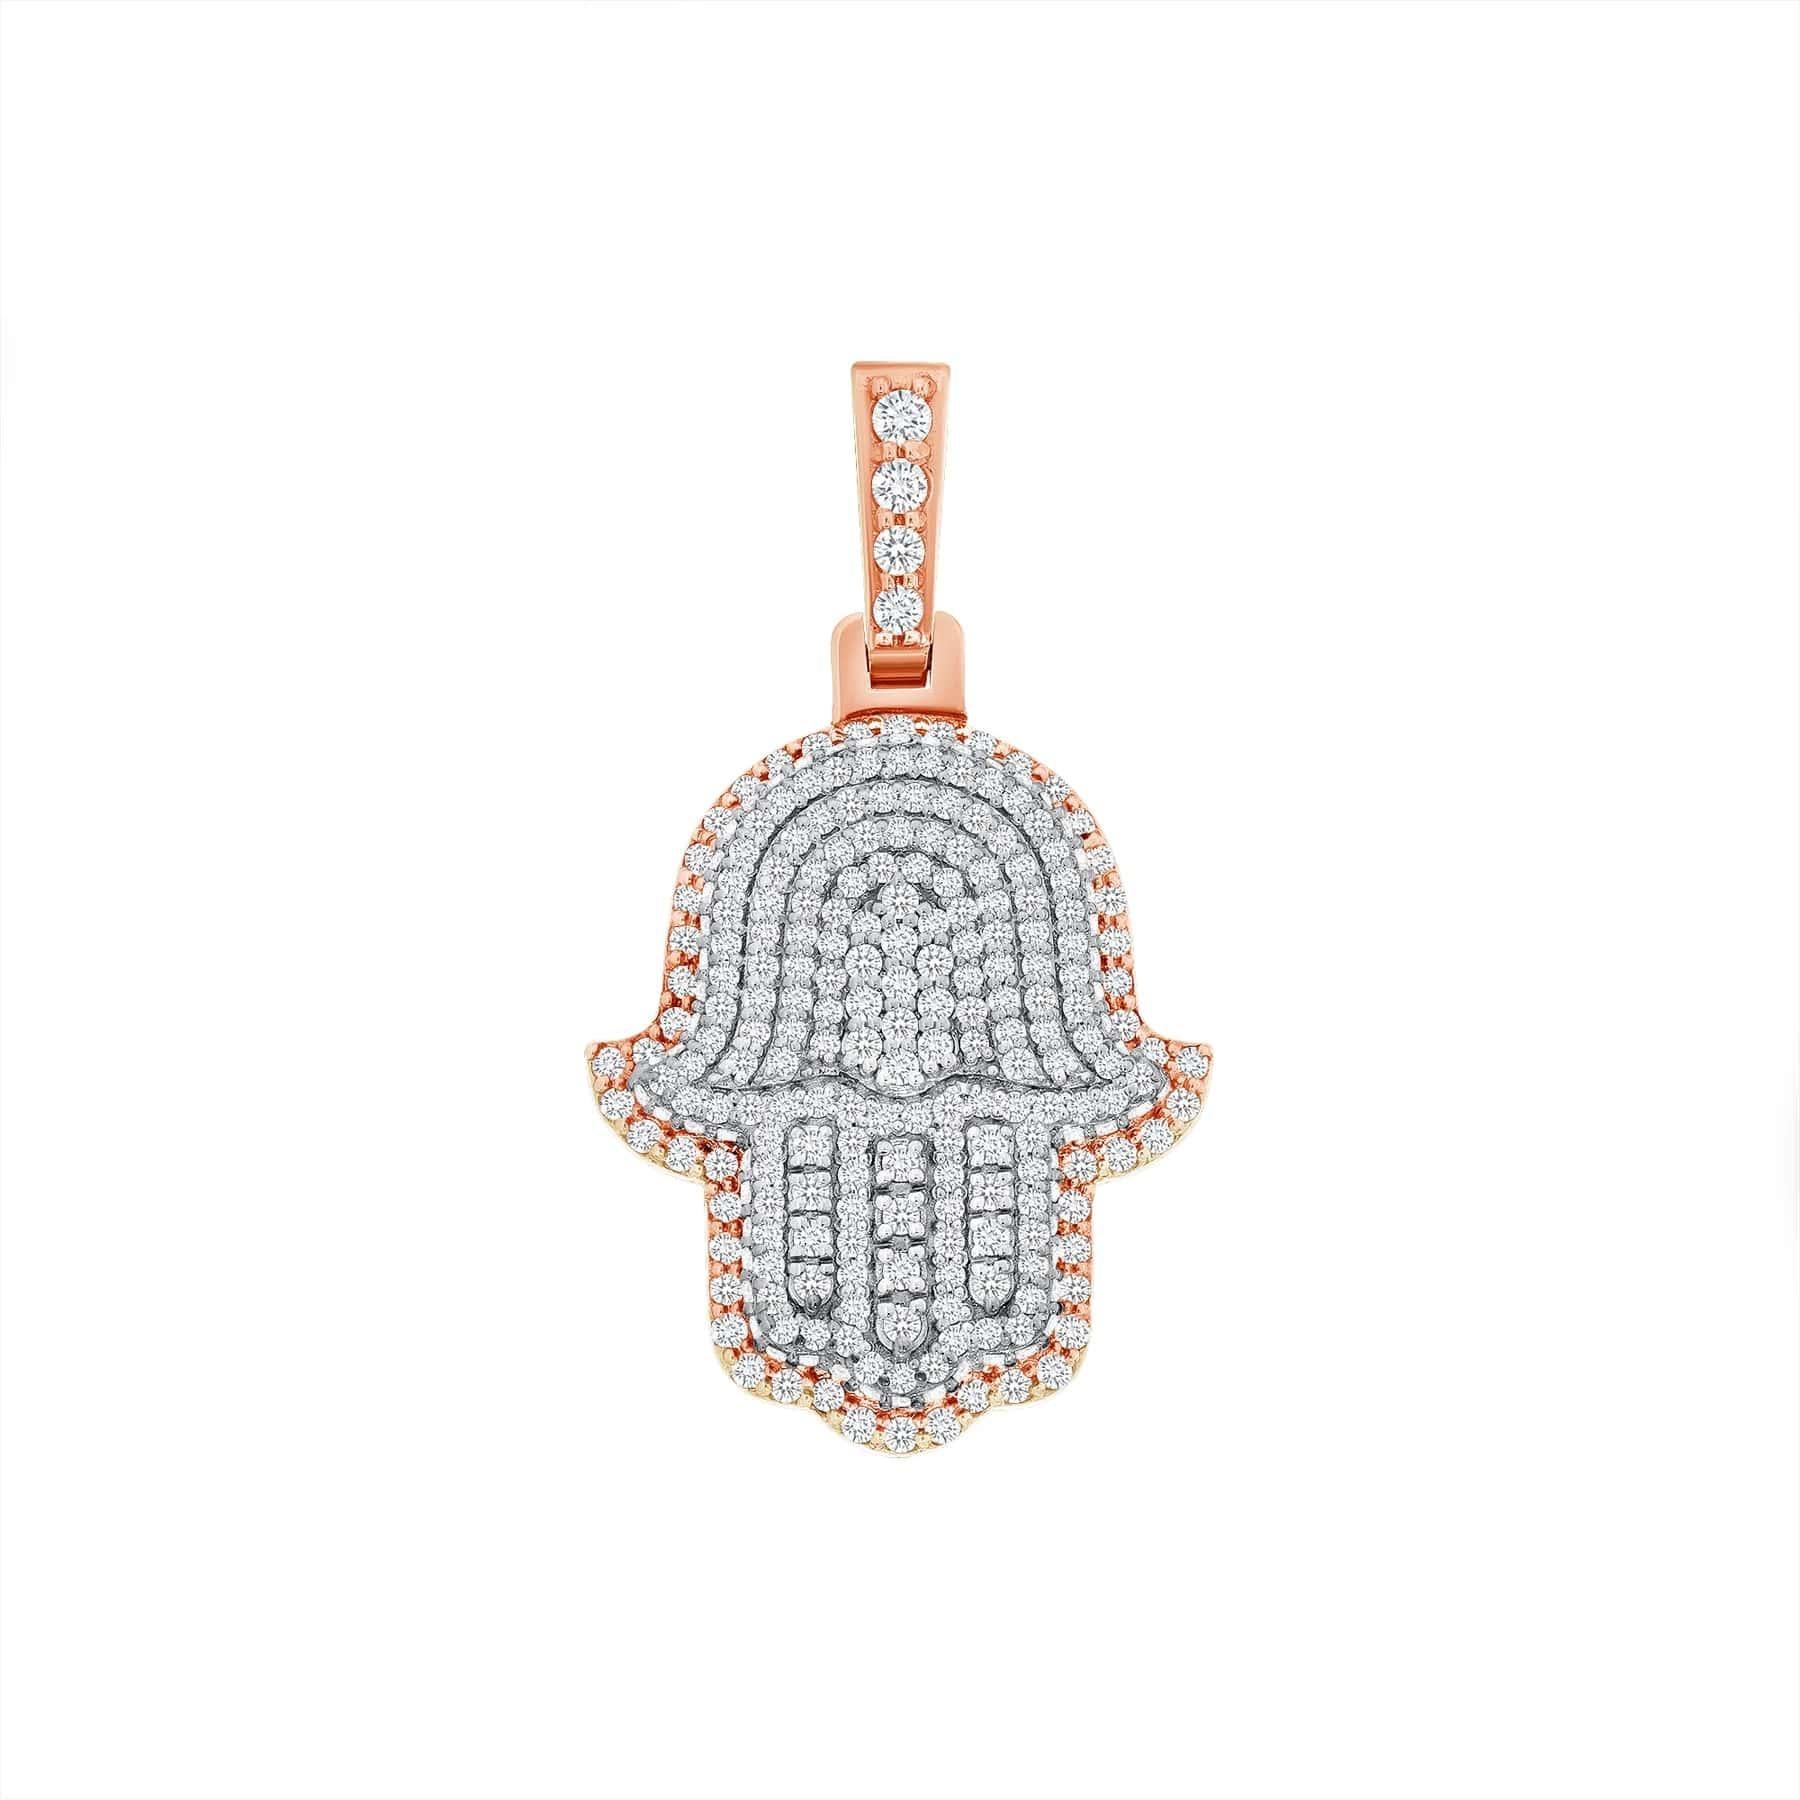 Zara's Diamond Hamsa Necklace In New Condition For Sale In Los Angeles, CA